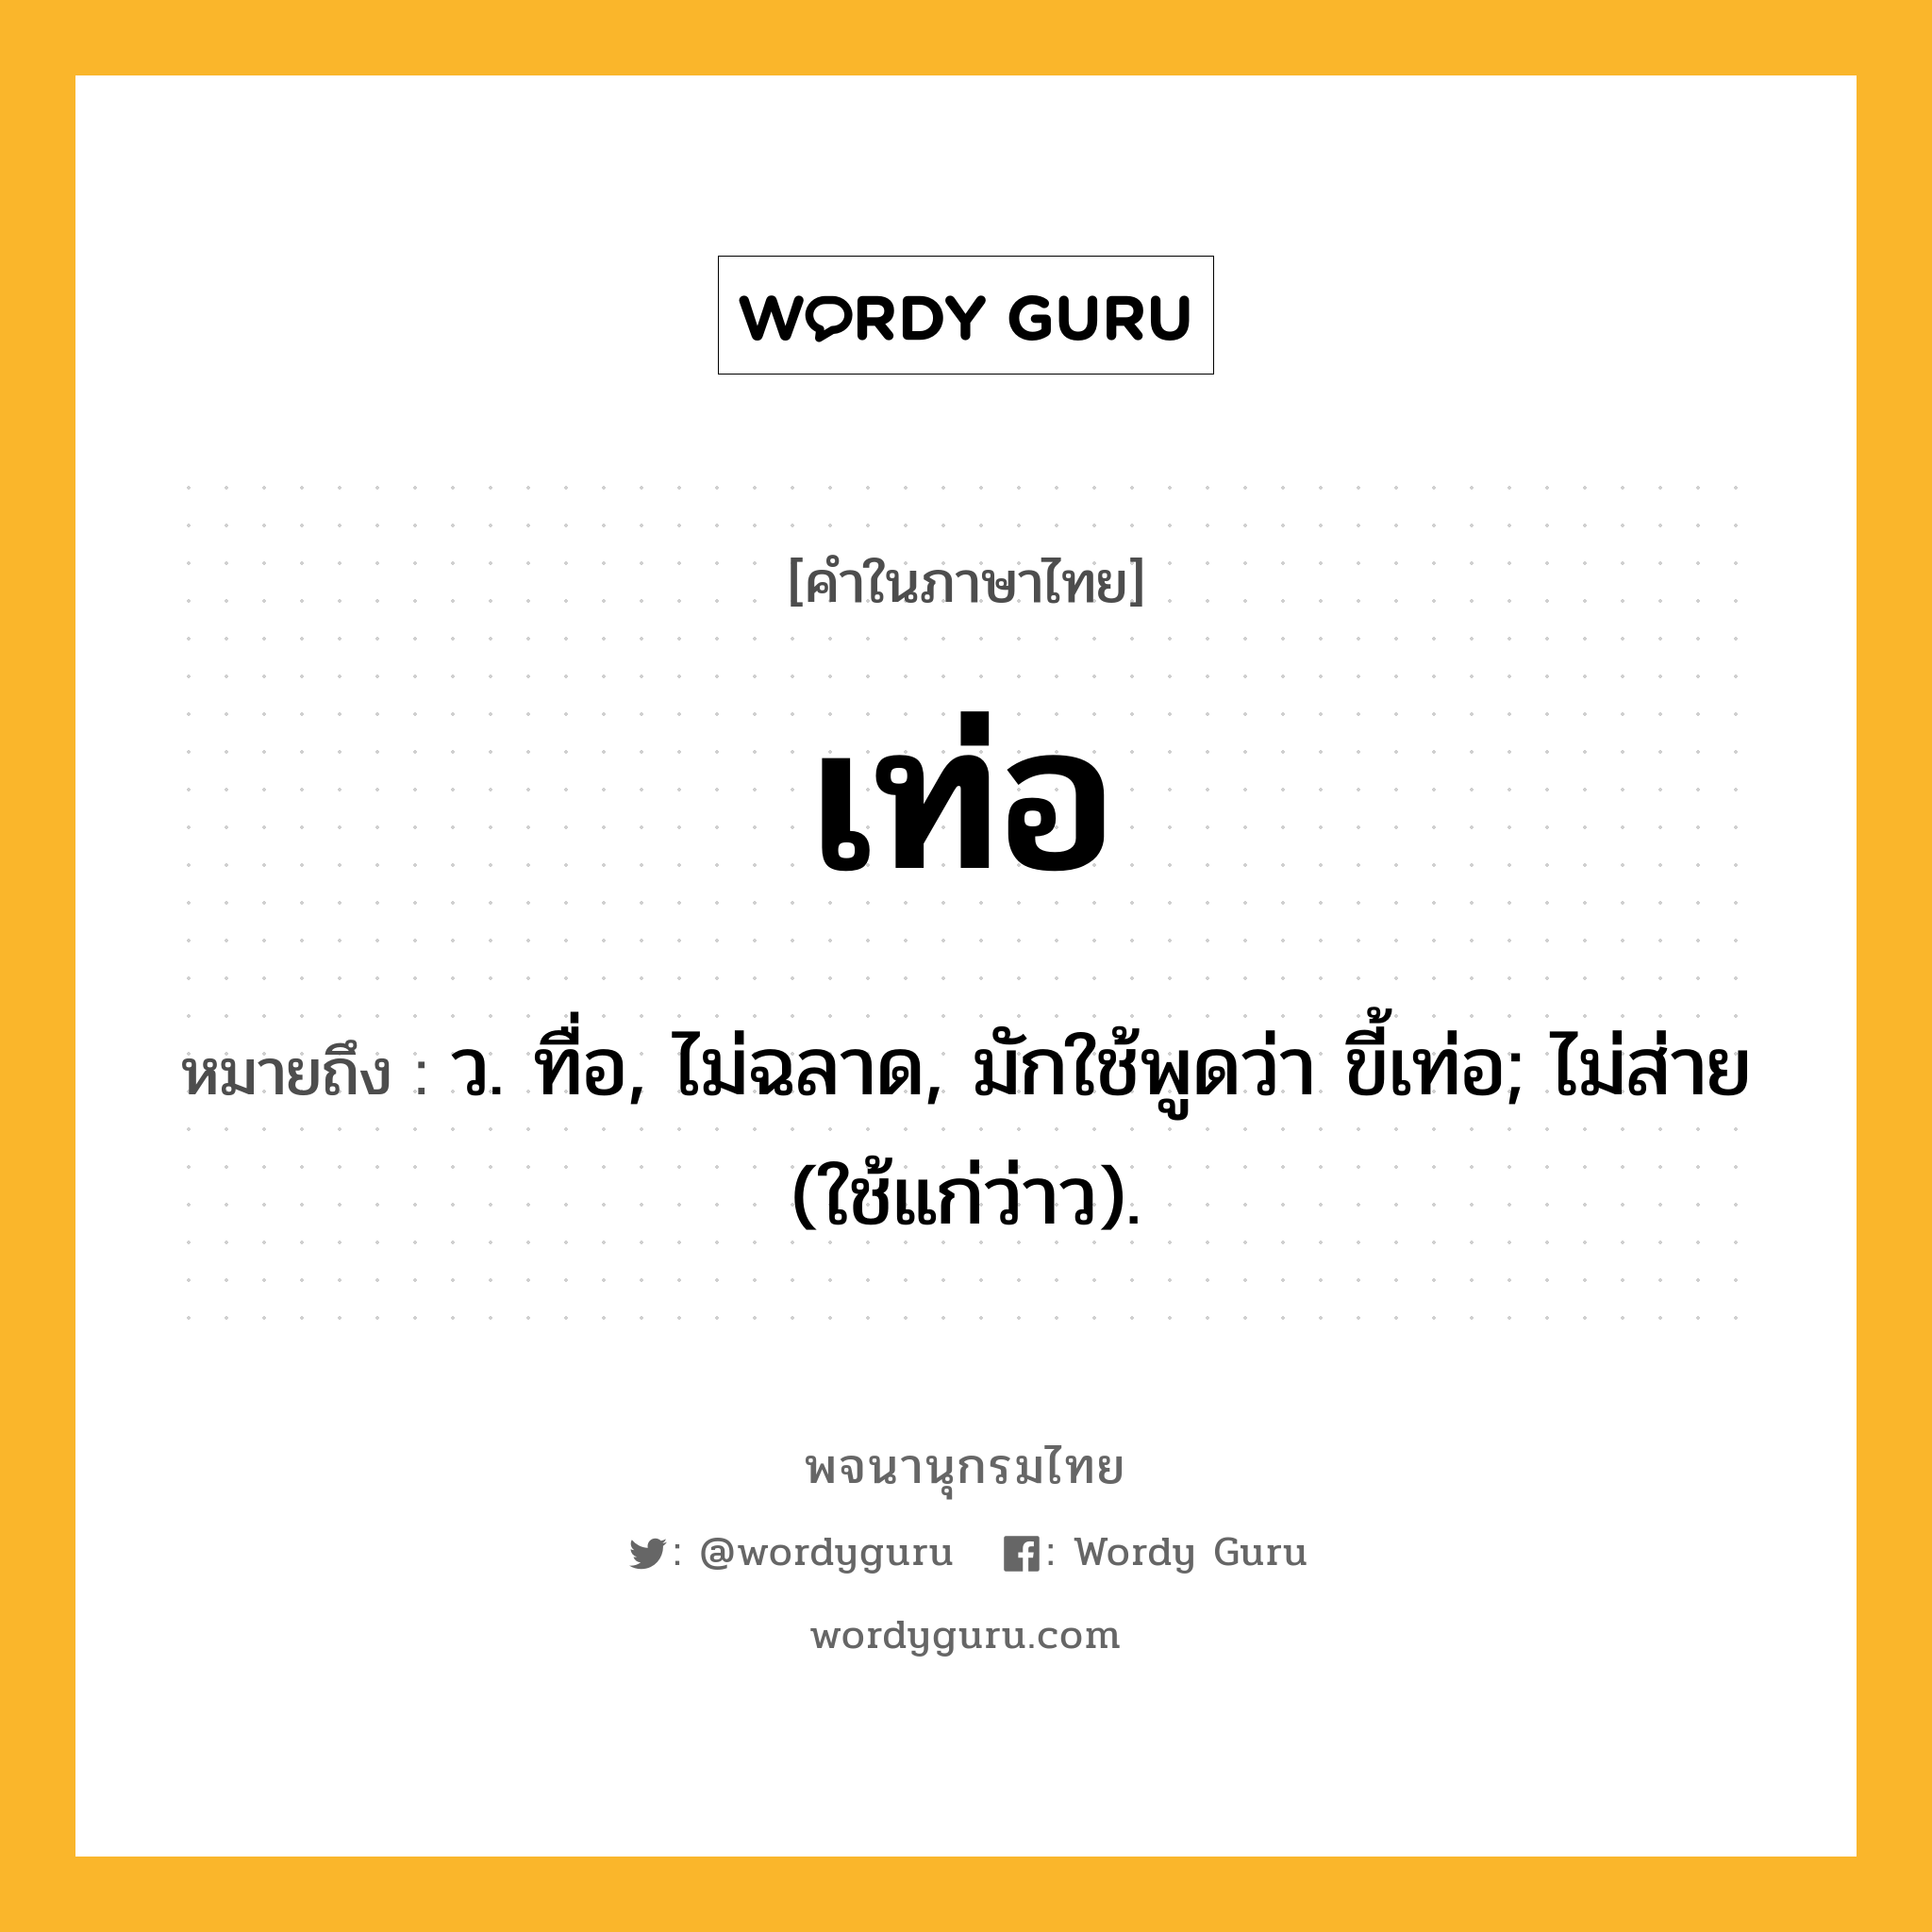 เท่อ ความหมาย หมายถึงอะไร?, คำในภาษาไทย เท่อ หมายถึง ว. ทื่อ, ไม่ฉลาด, มักใช้พูดว่า ขี้เท่อ; ไม่ส่าย (ใช้แก่ว่าว).